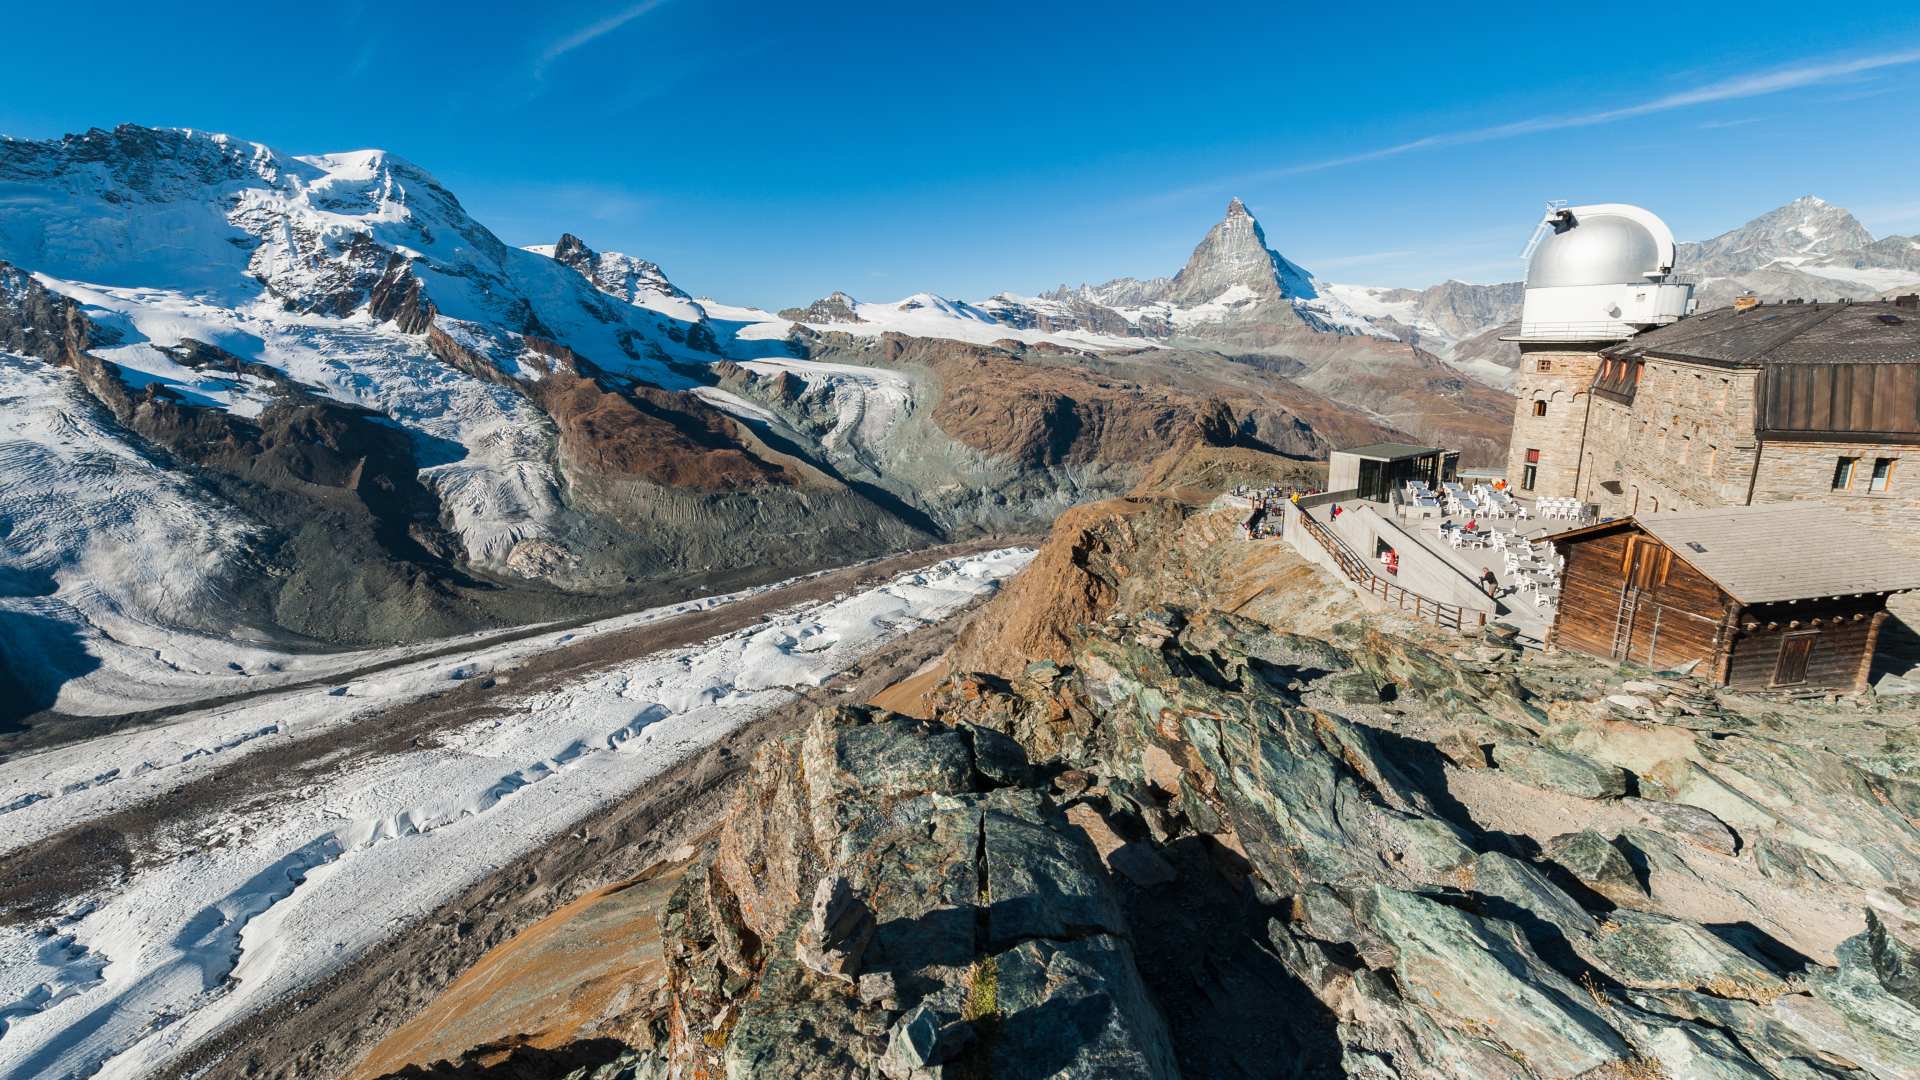 Gorner Glacier and the Matterhorn from Gornergrat train station, Switzerland